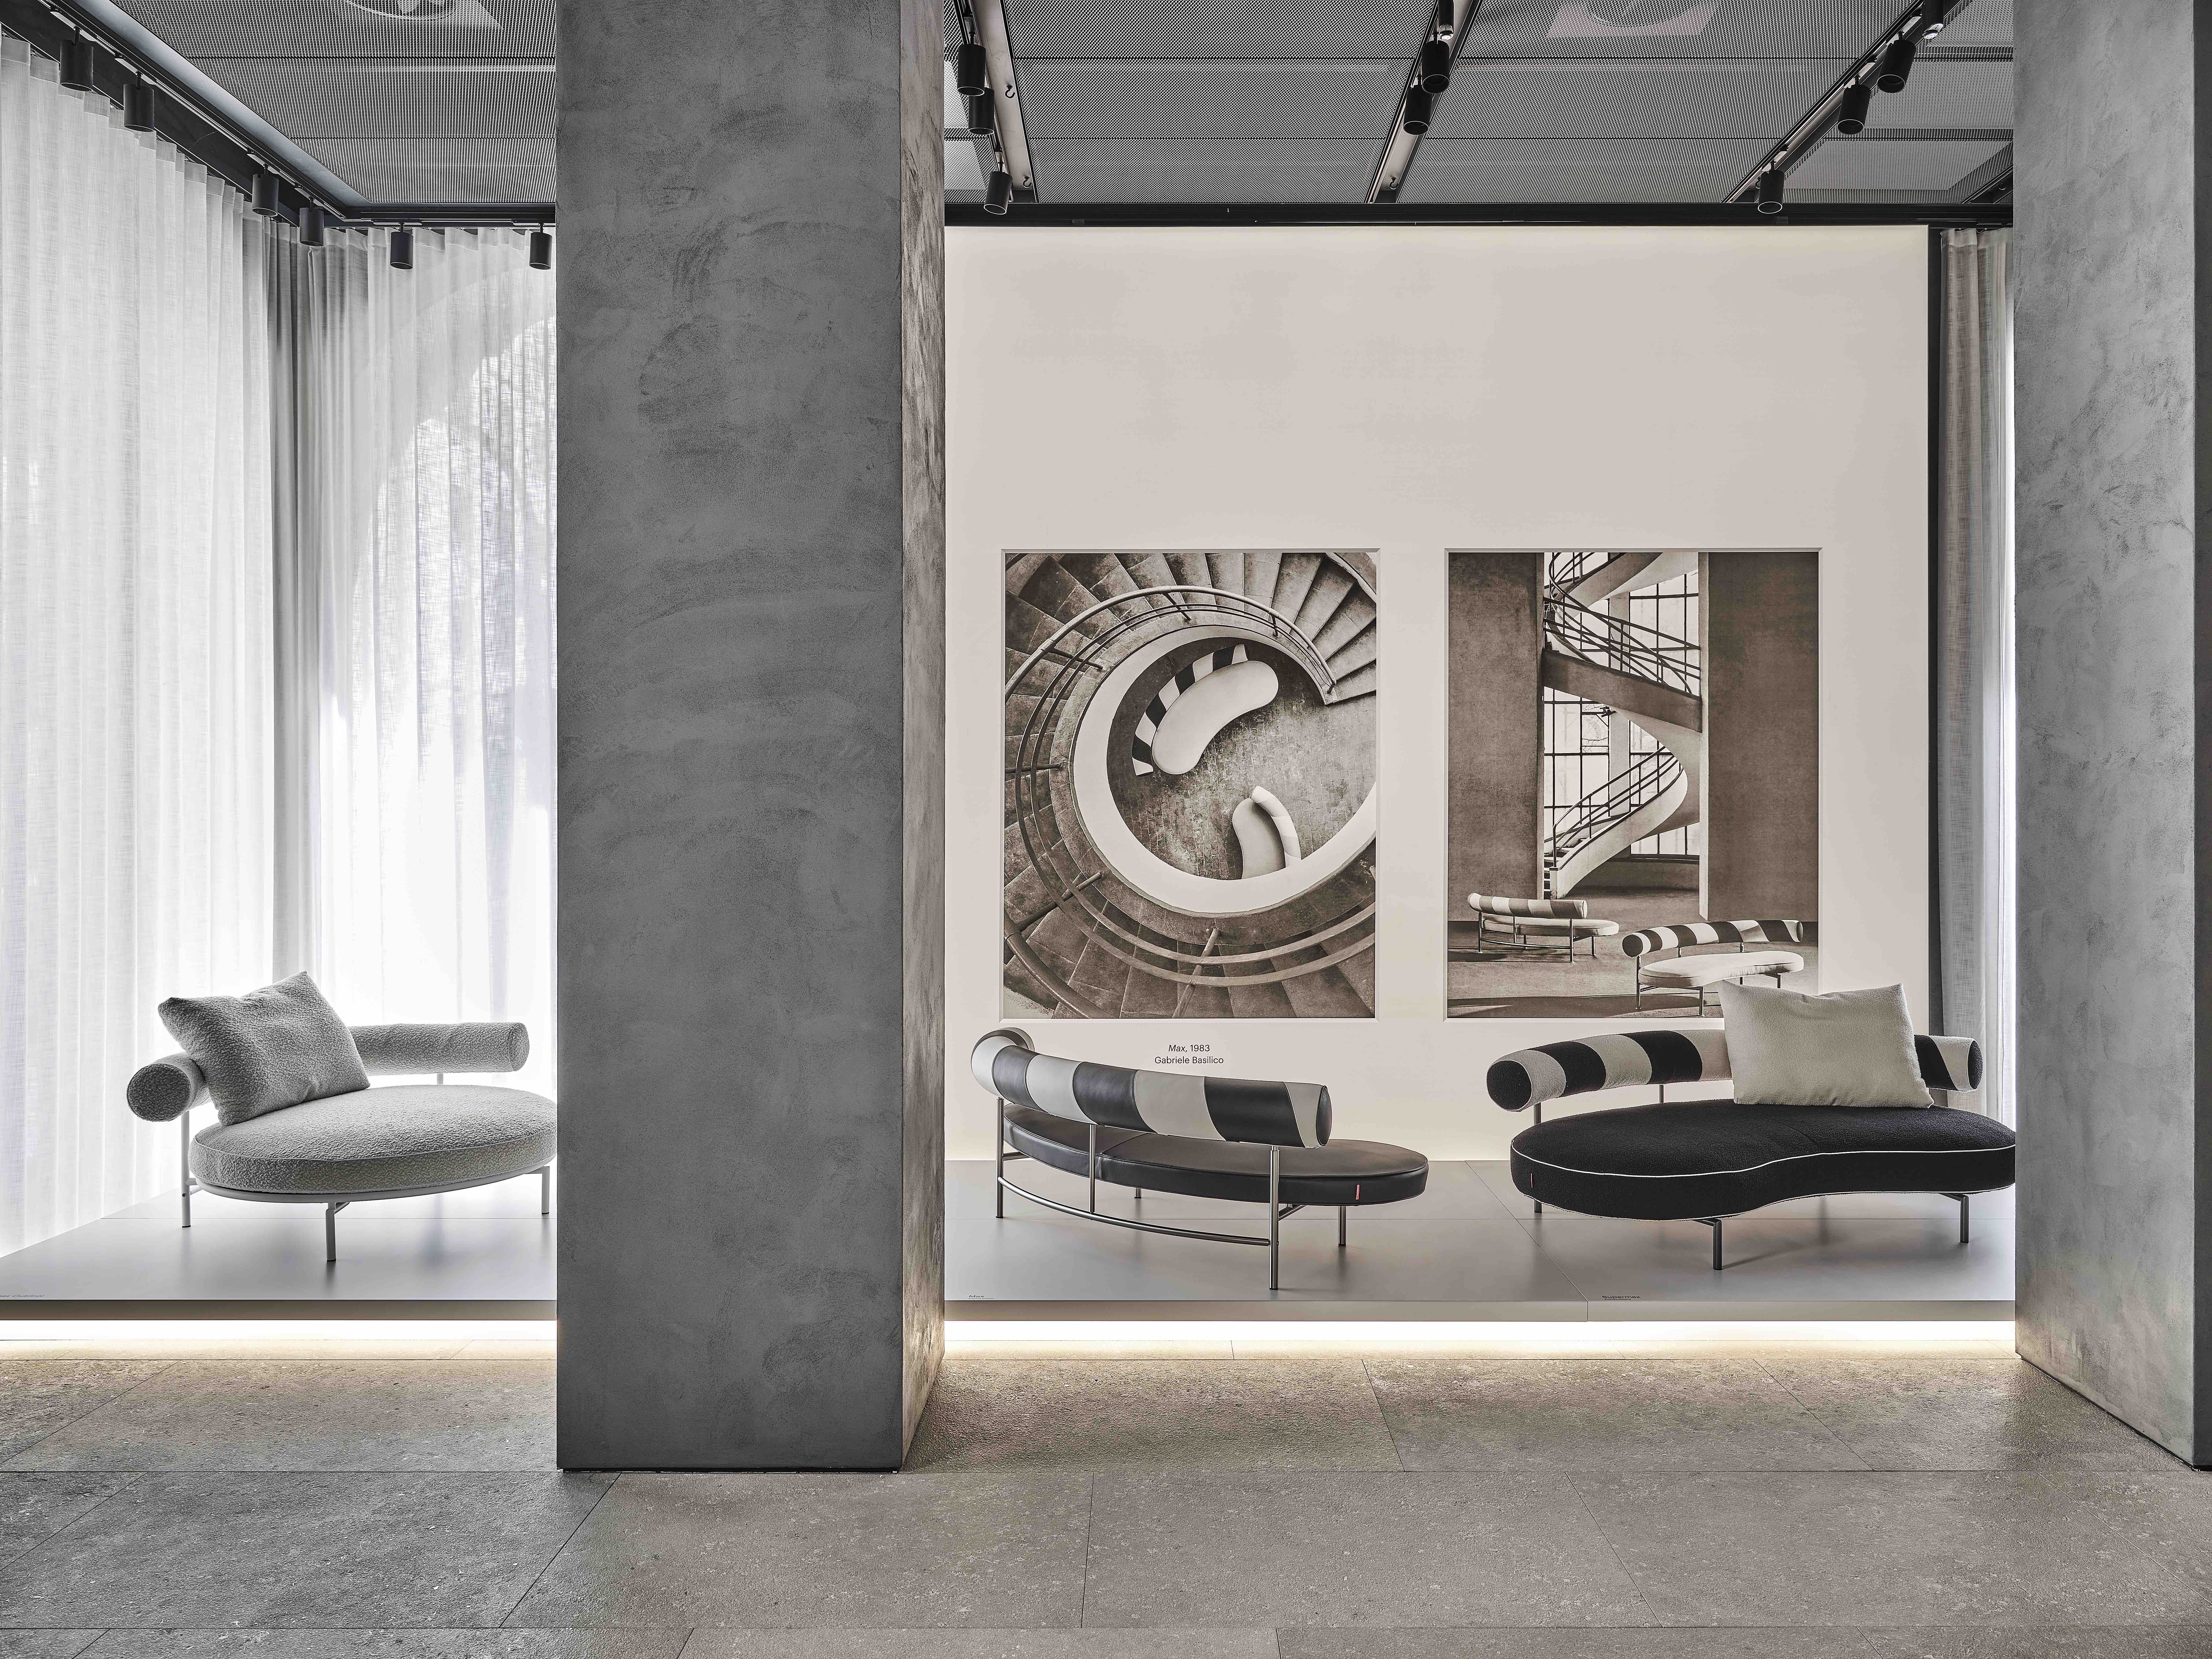 Milan Design Week: a playground for luxury brands - Luxury Tribune